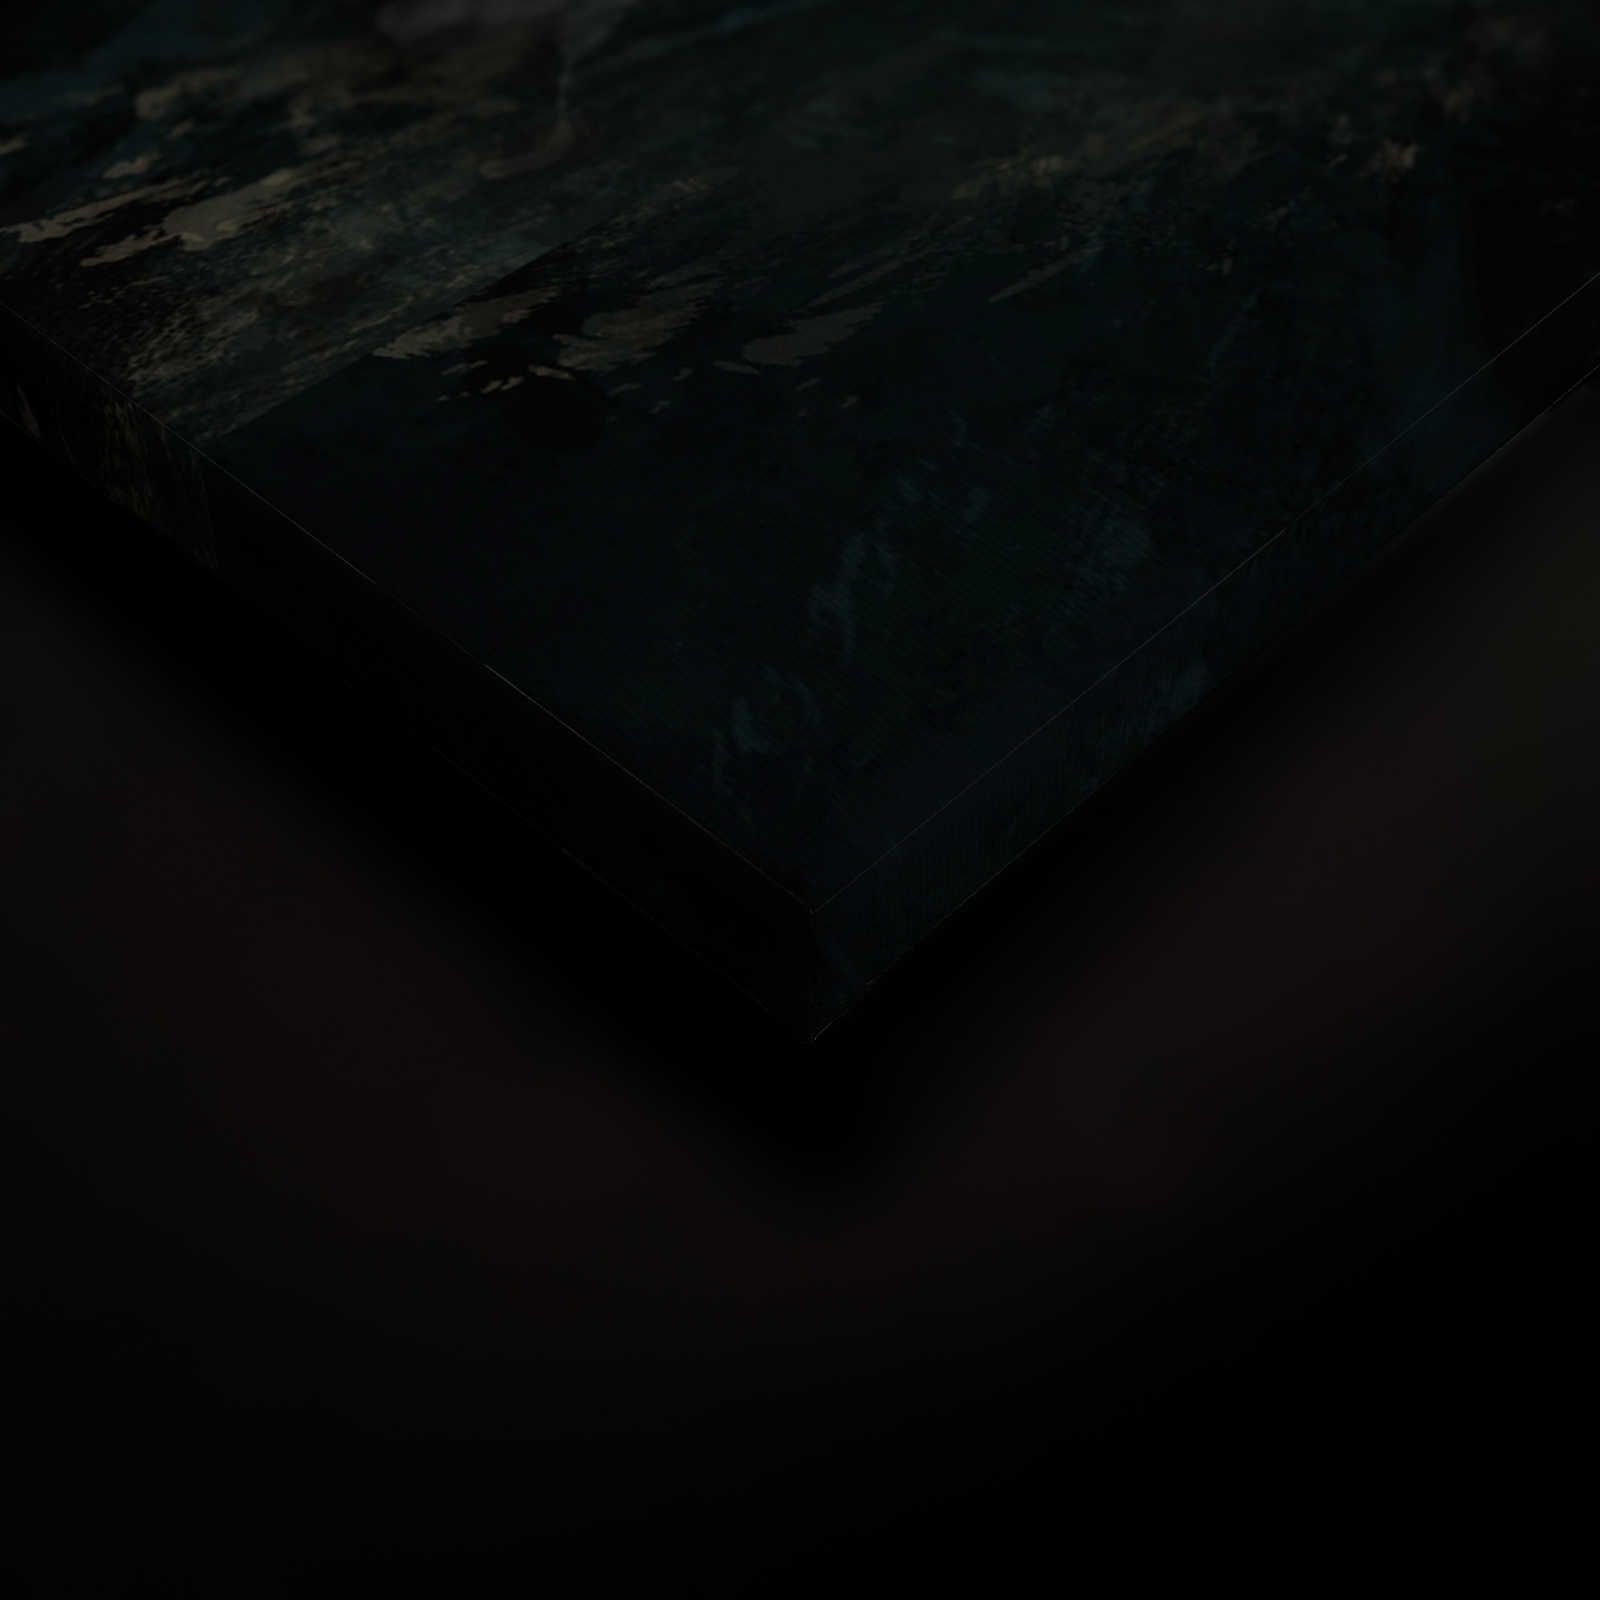             Cuadro en lienzo negro con diseño de ballena en cartel - 0,90 m x 0,60 m
        